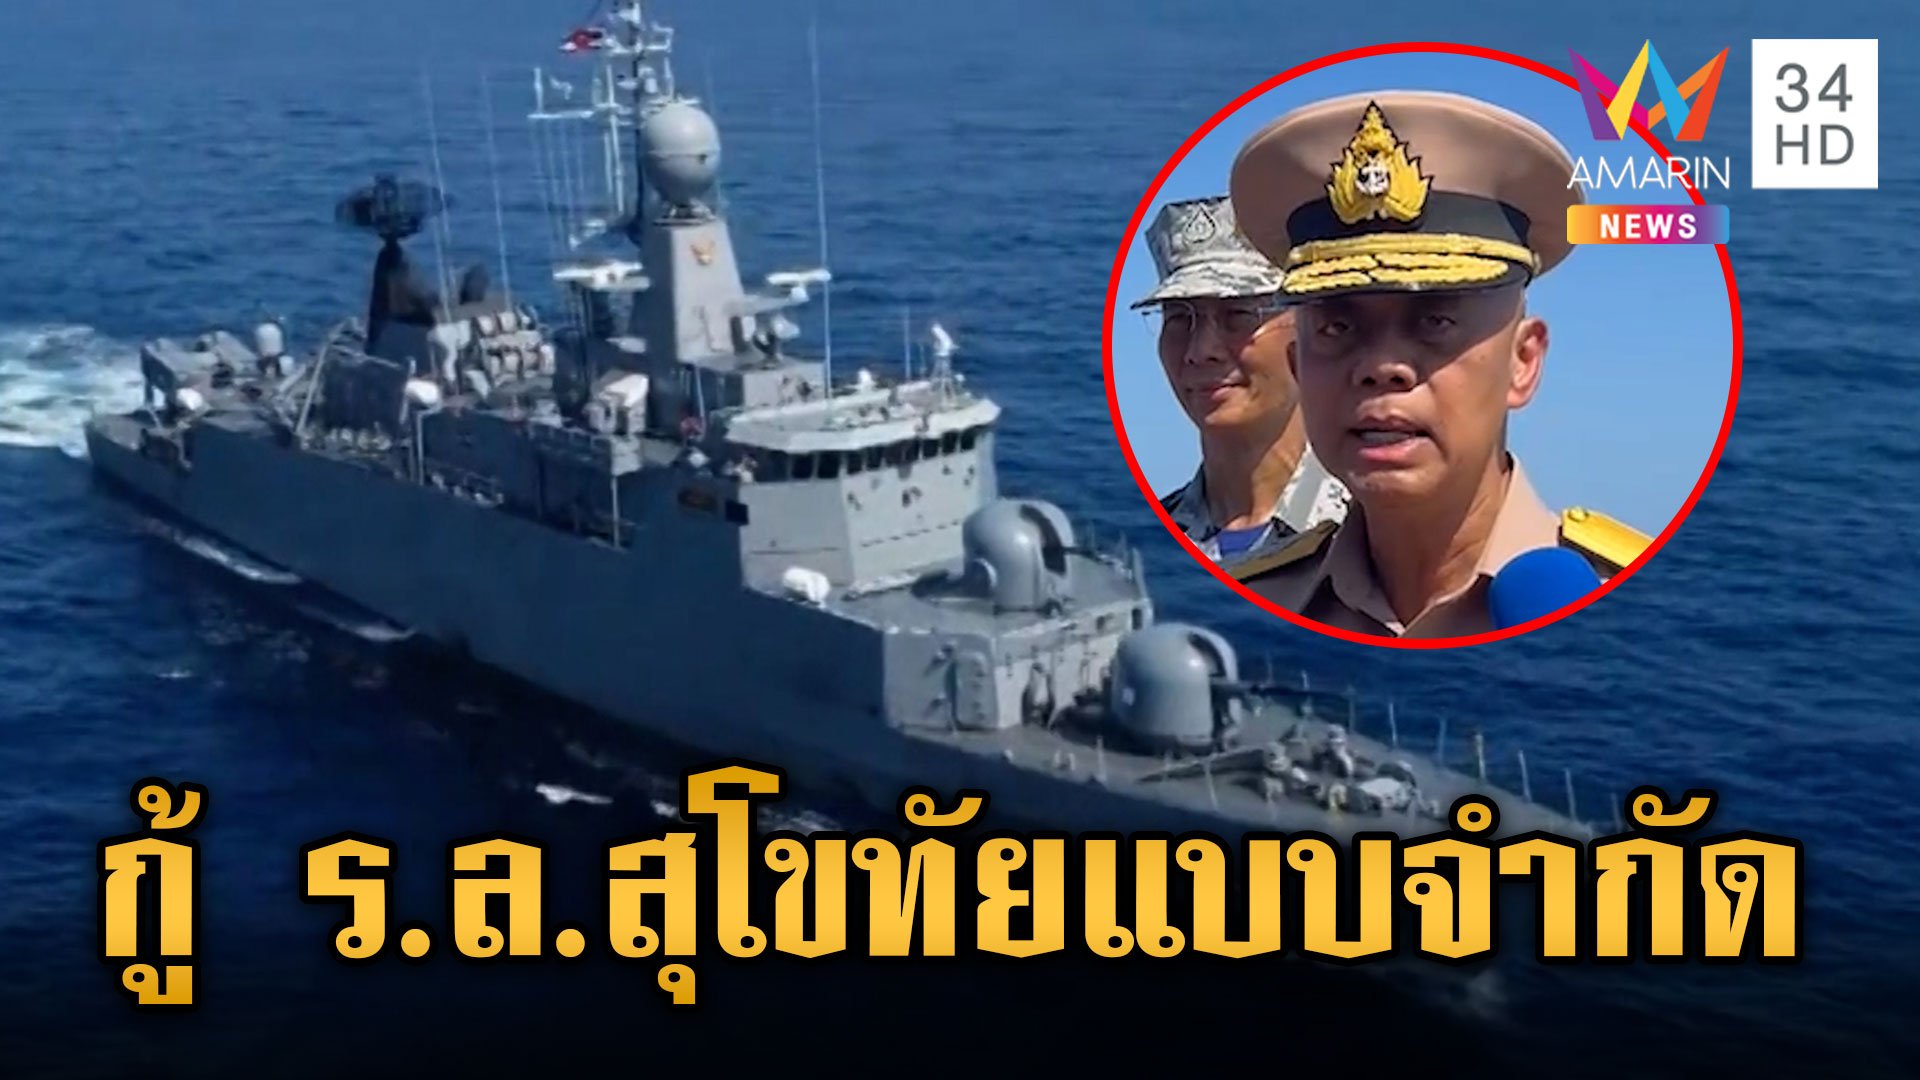 เริ่มแล้วกู้เรือหลวงสุโขทัยแบบจำกัด ทัพเรือไทย-สหรัฐฯ ร่วมกันปฏิบัติภารกิจ  | ข่าวเย็นอมรินทร์ | 22 ก.พ. 67 | AMARIN TVHD34